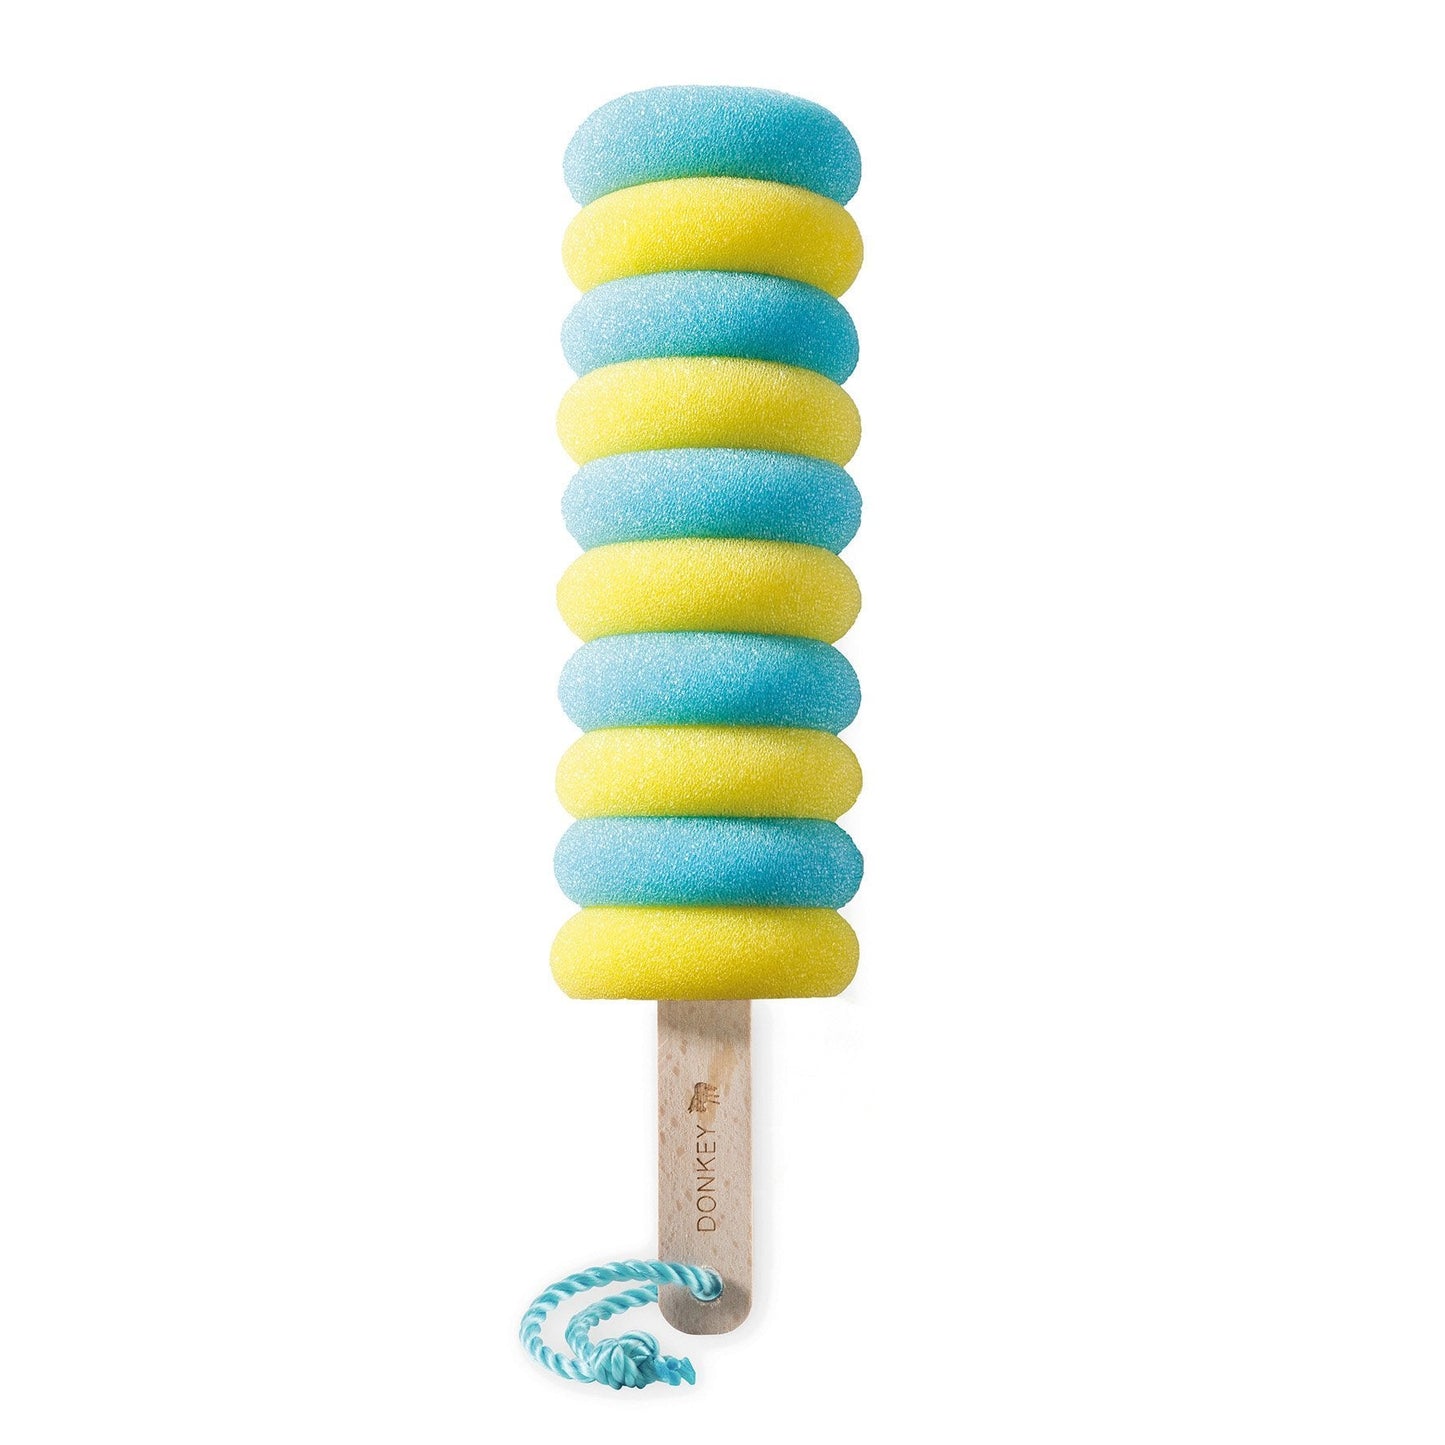 Eponge Crazy Curls Citron Donkey | Boutique d'objets cadeaux designs CoolDesign.fr